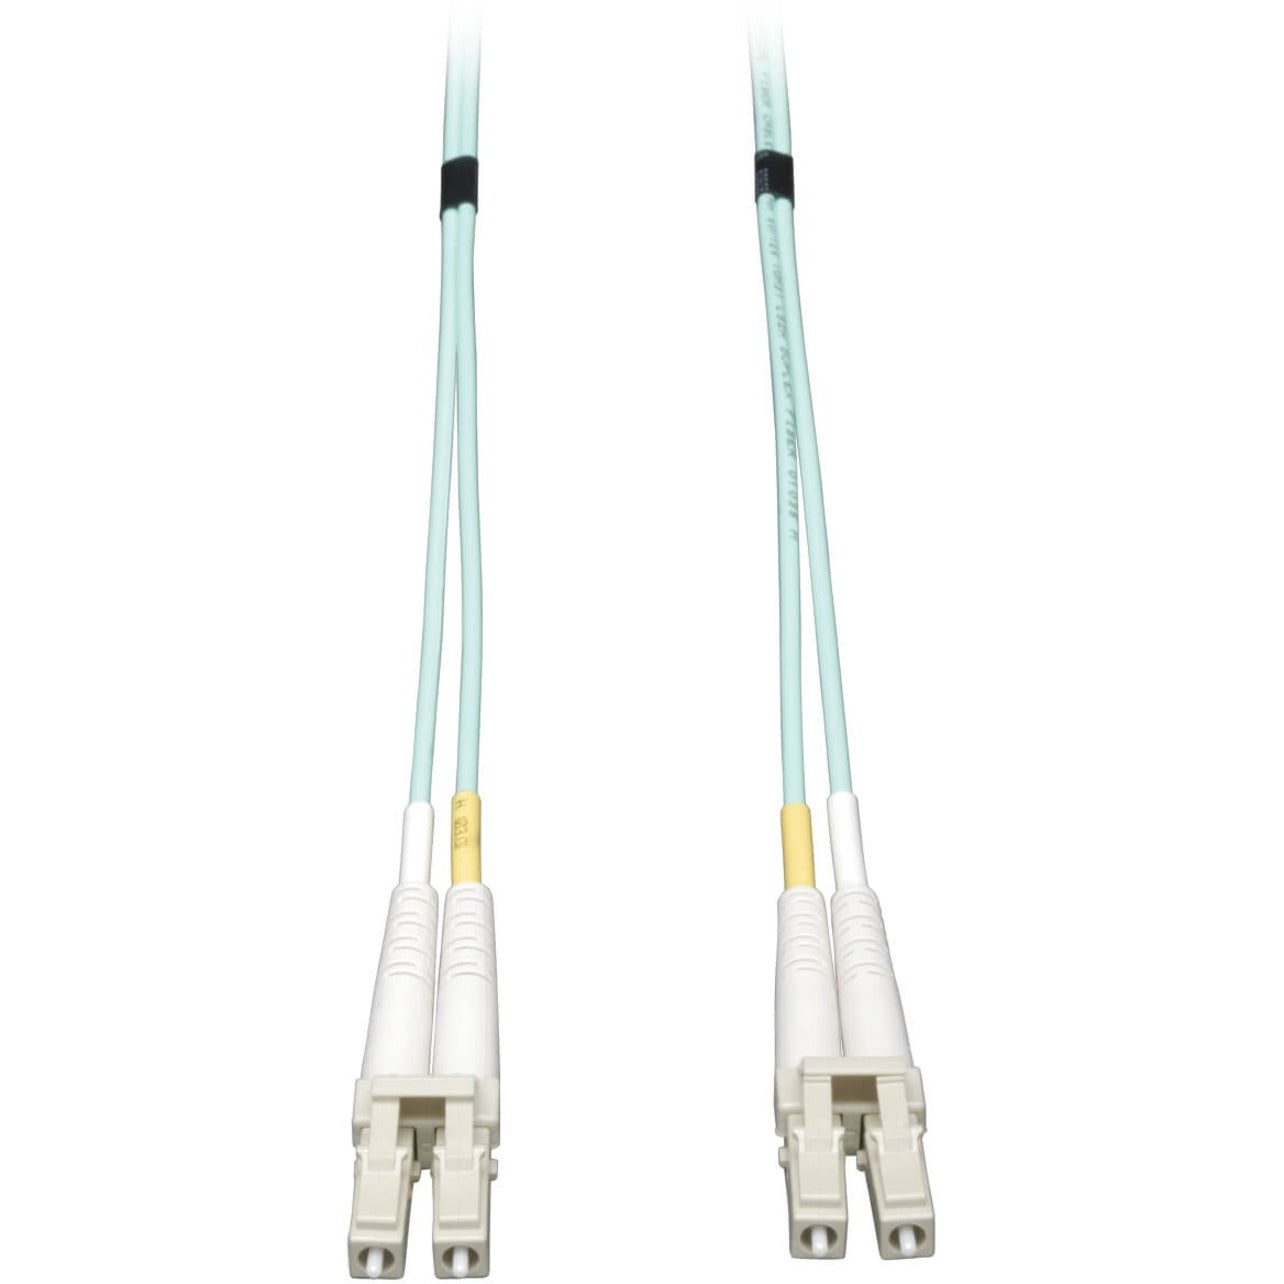 Tripp Lite N820-10M 10Gb Duplex MMF 50/125 LSZH Patch Cable, Aqua, 10M (33 ft.)